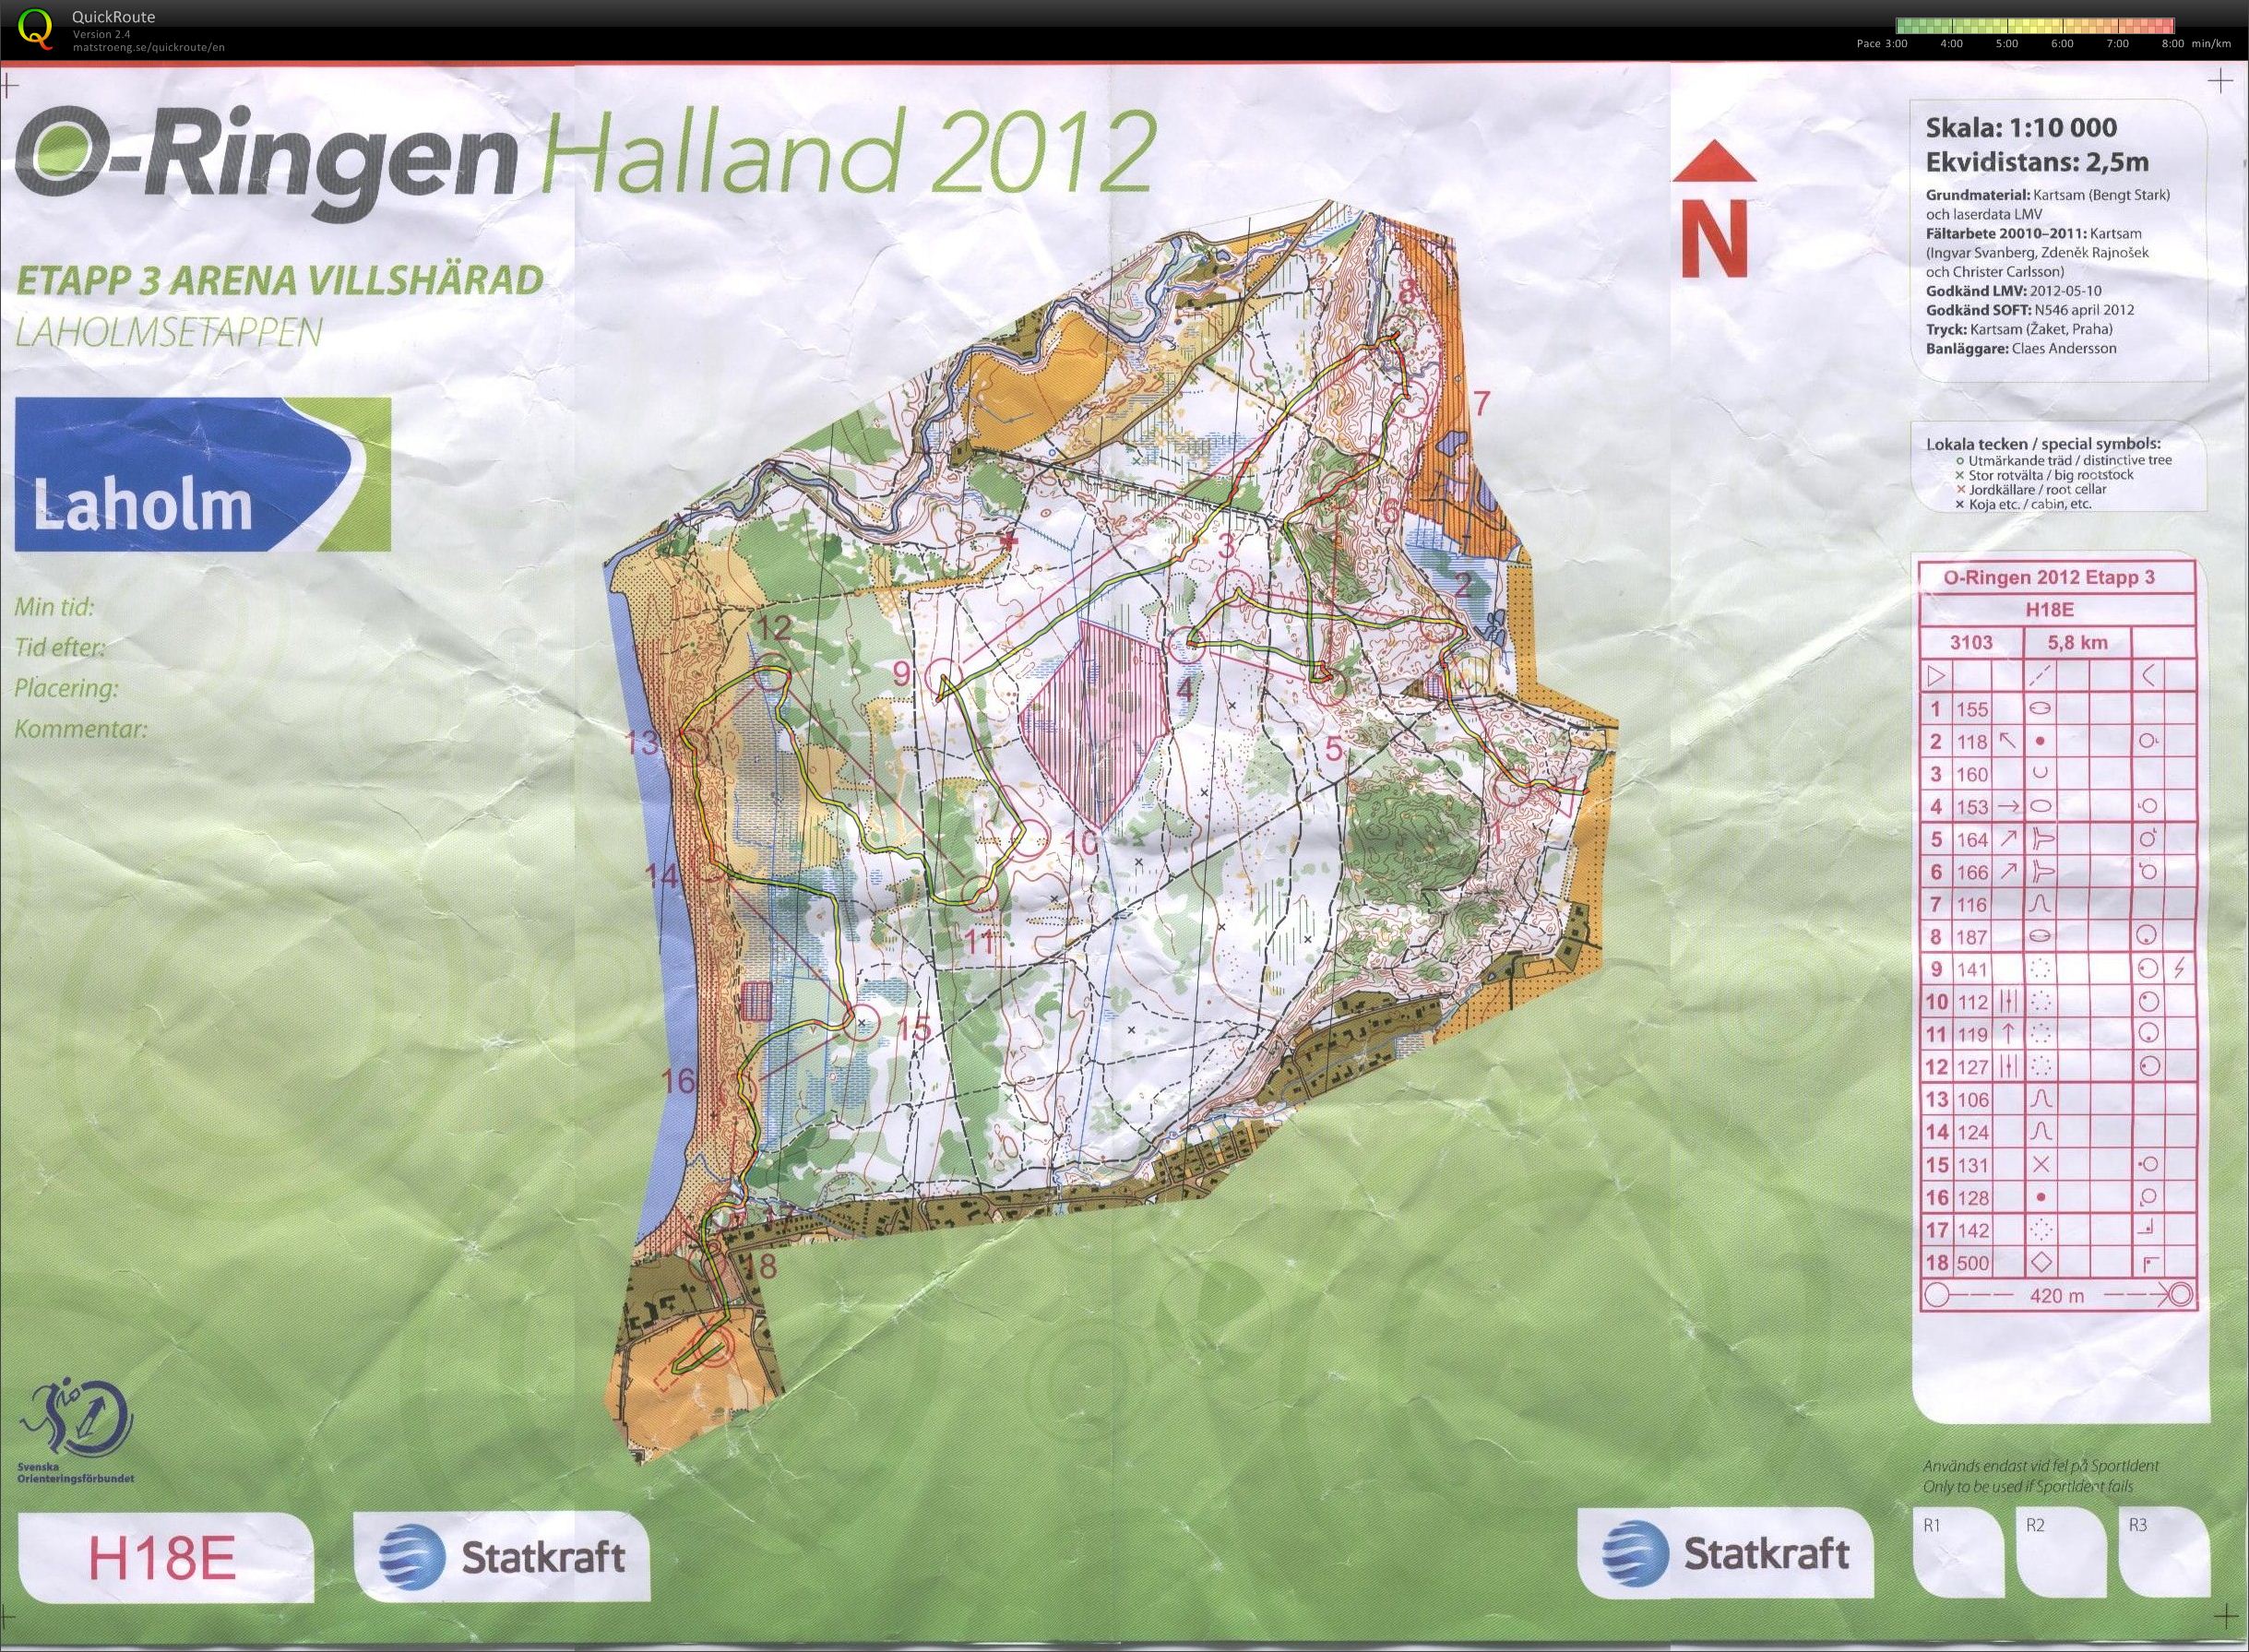 O-Ringen 2012 Etappe 3 (2012-07-24)